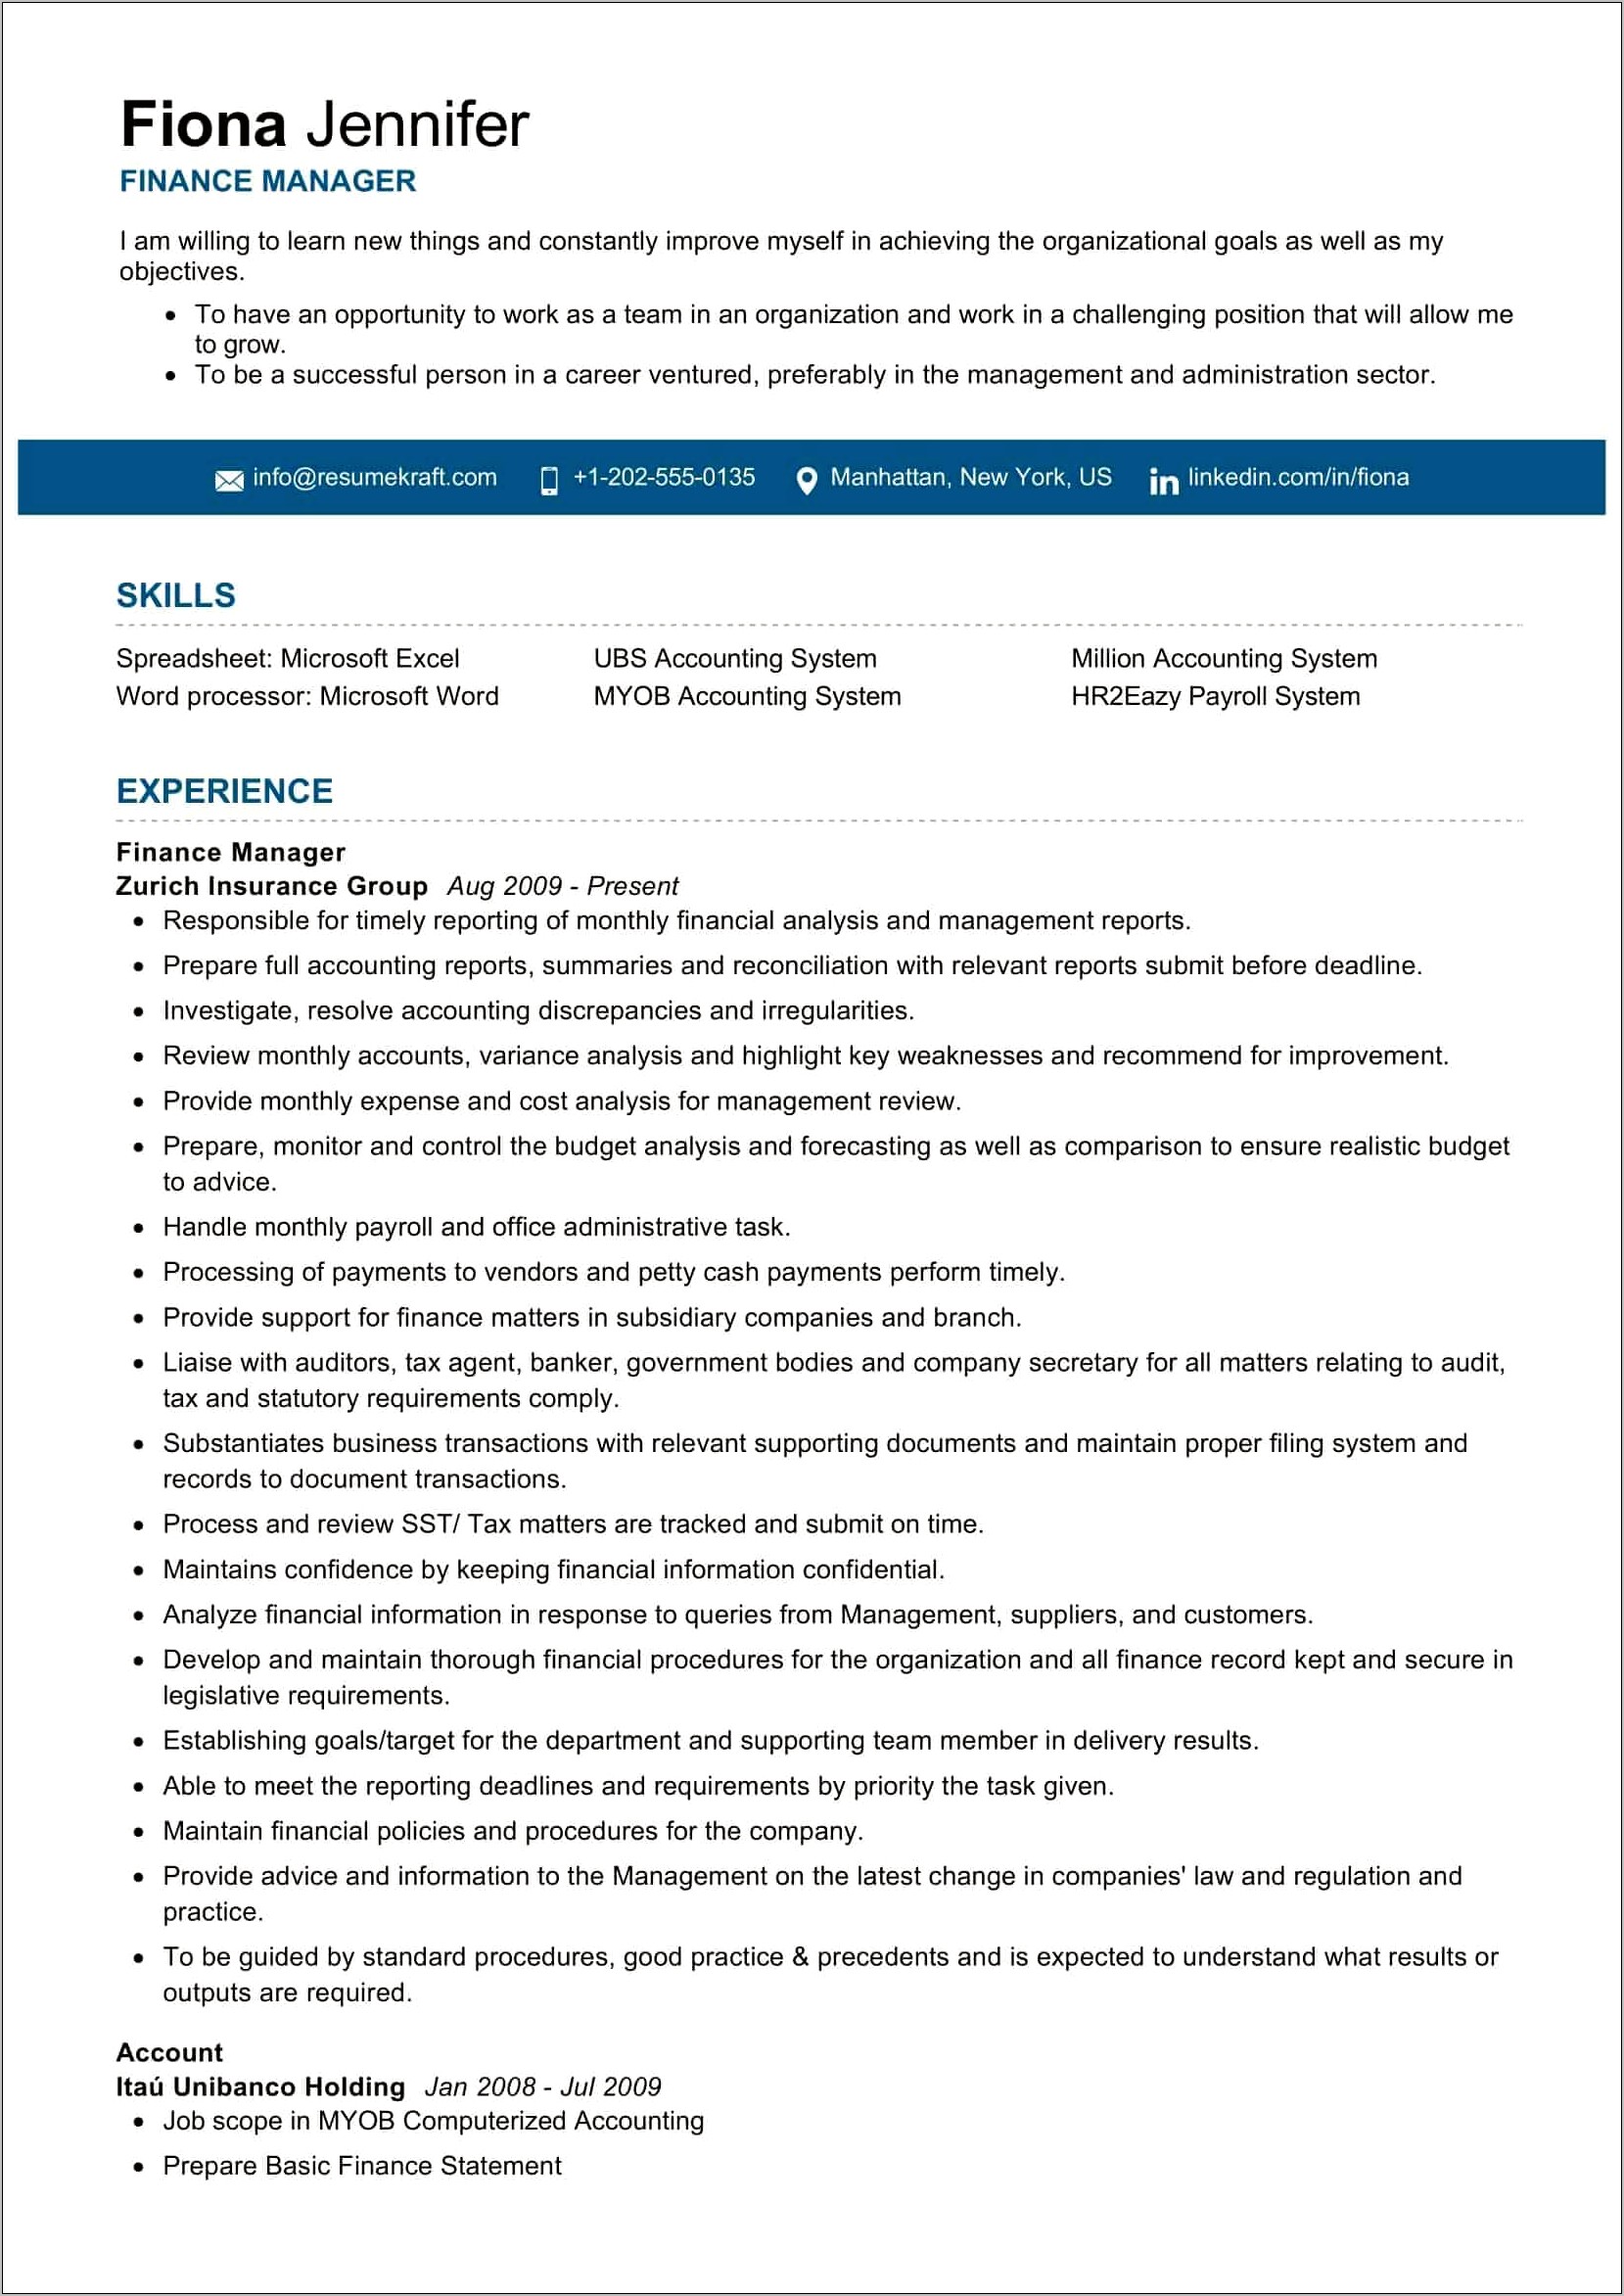 Best Resume Format For Finance